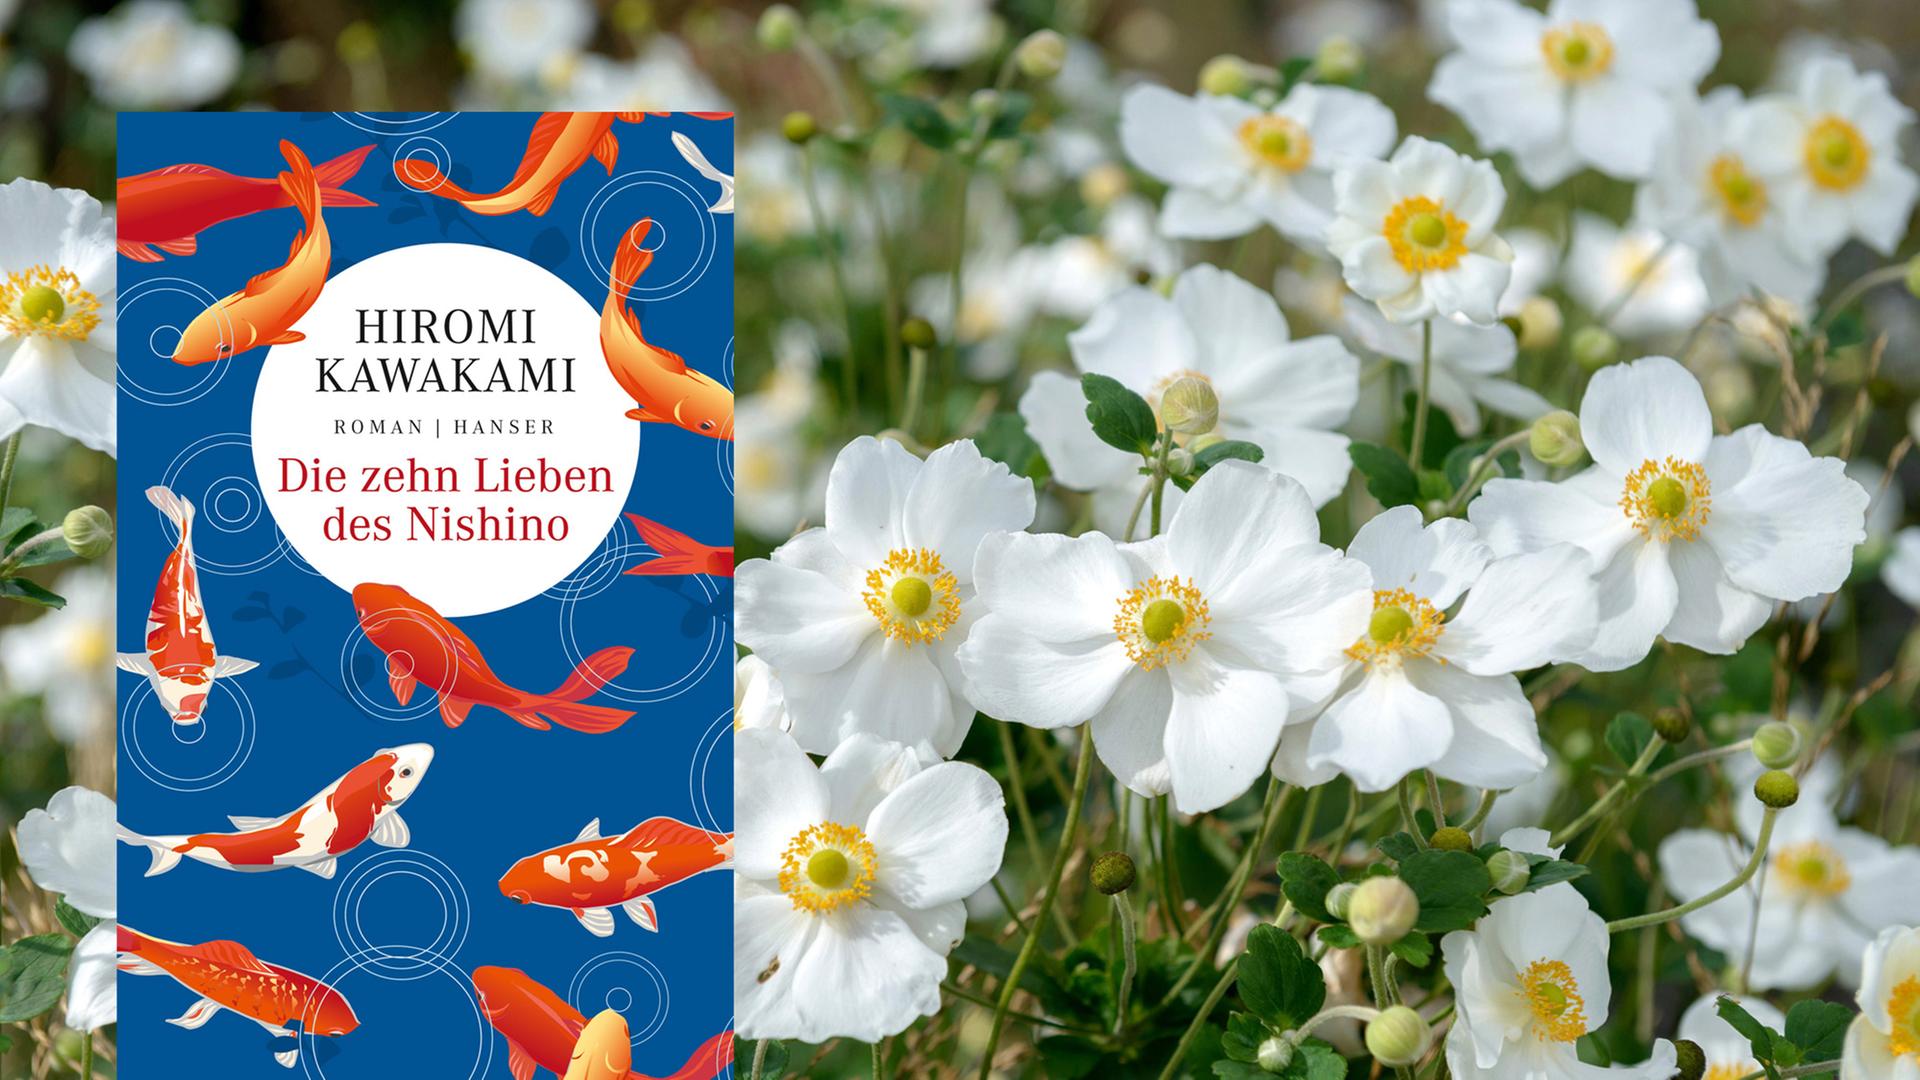 Coverabbildung "Die zehn Lieben des Nishino" von Hiromi Kawakami, im Hintergrund eine Wiese mit weißen Blumen.